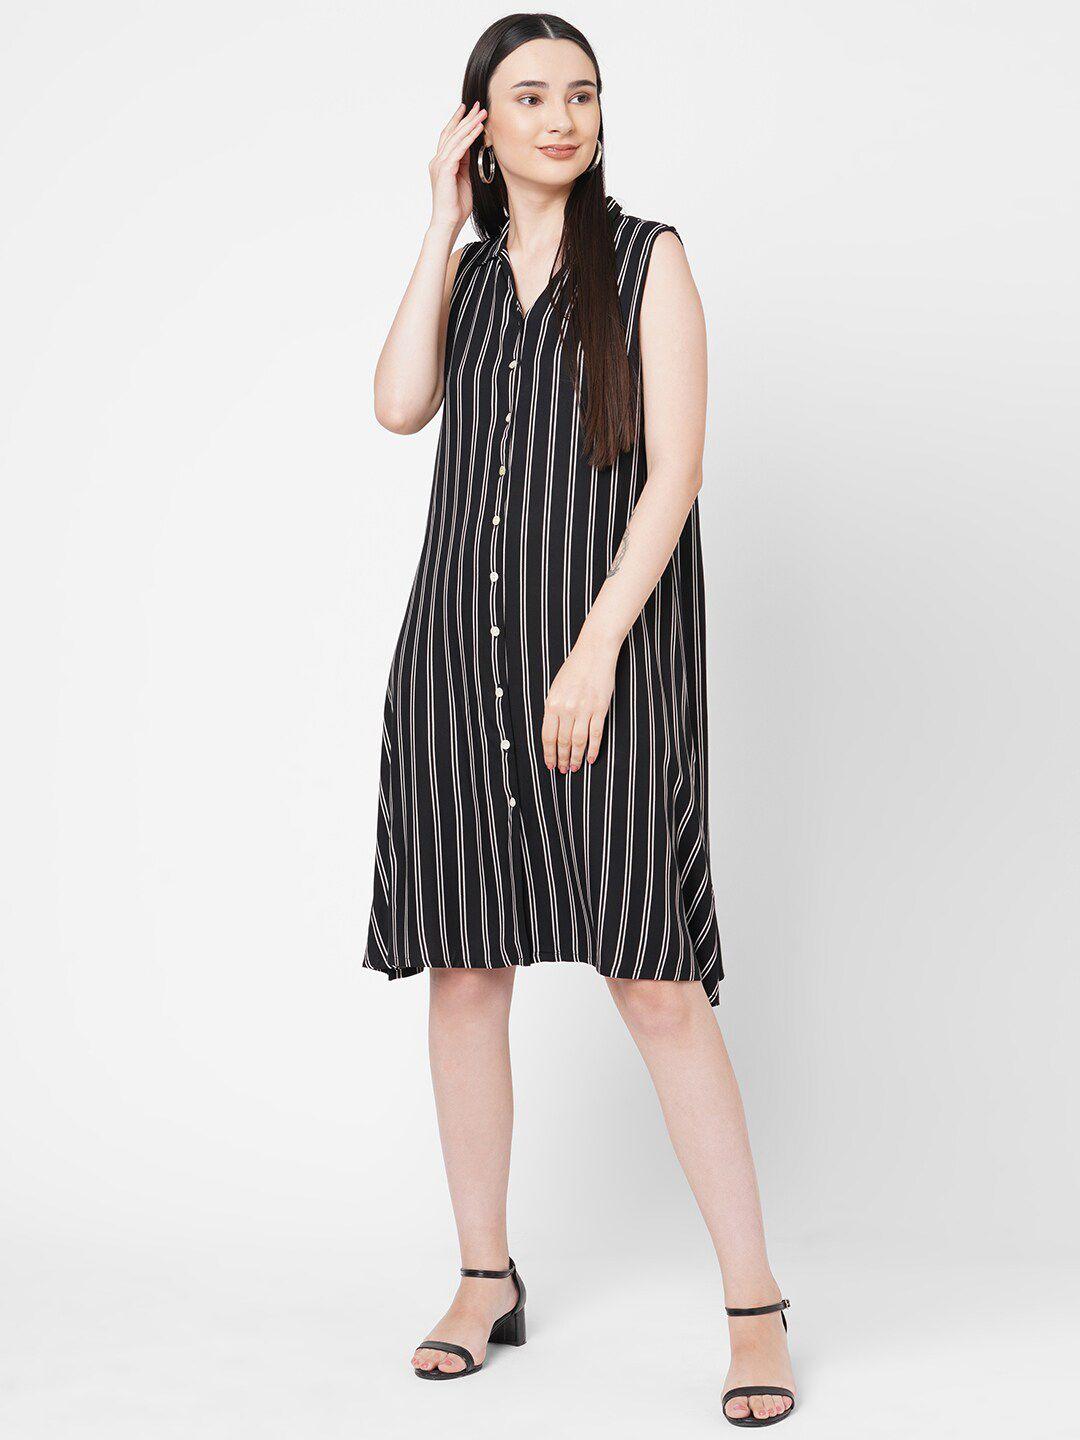 109f-black-striped-shirt-dress